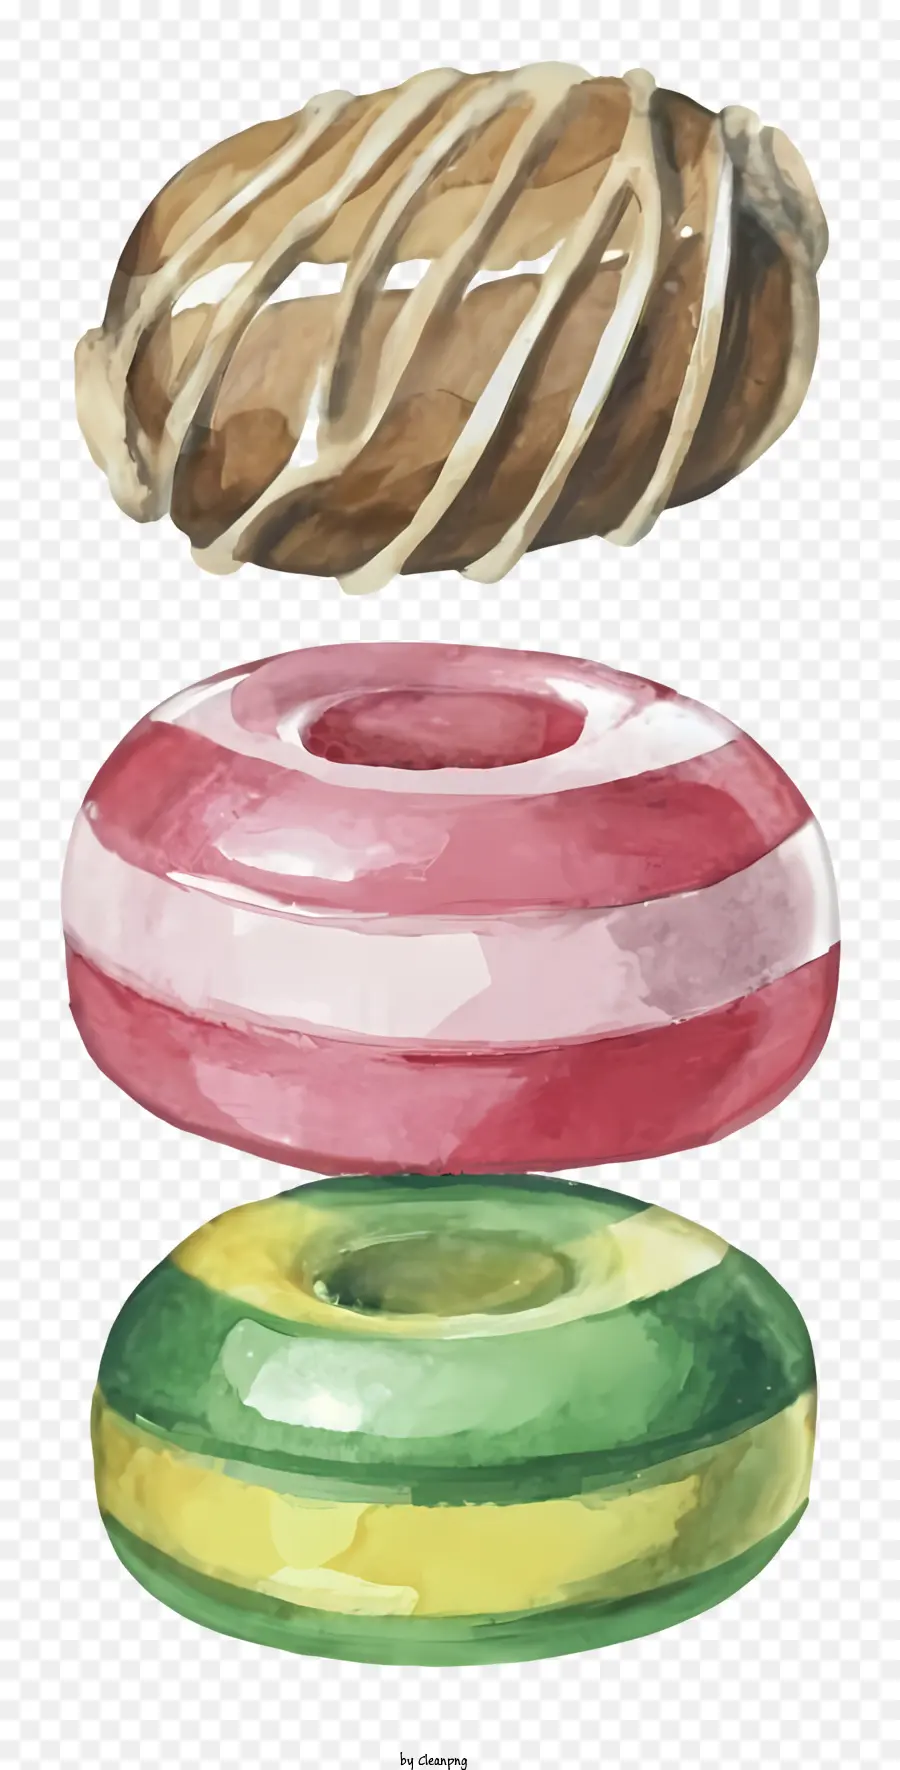 Donuts Schokoladen-Donut-Creme-Donut Green Donut Yellow Donut - Drei Arten von Donuts auf schwarzem Hintergrund